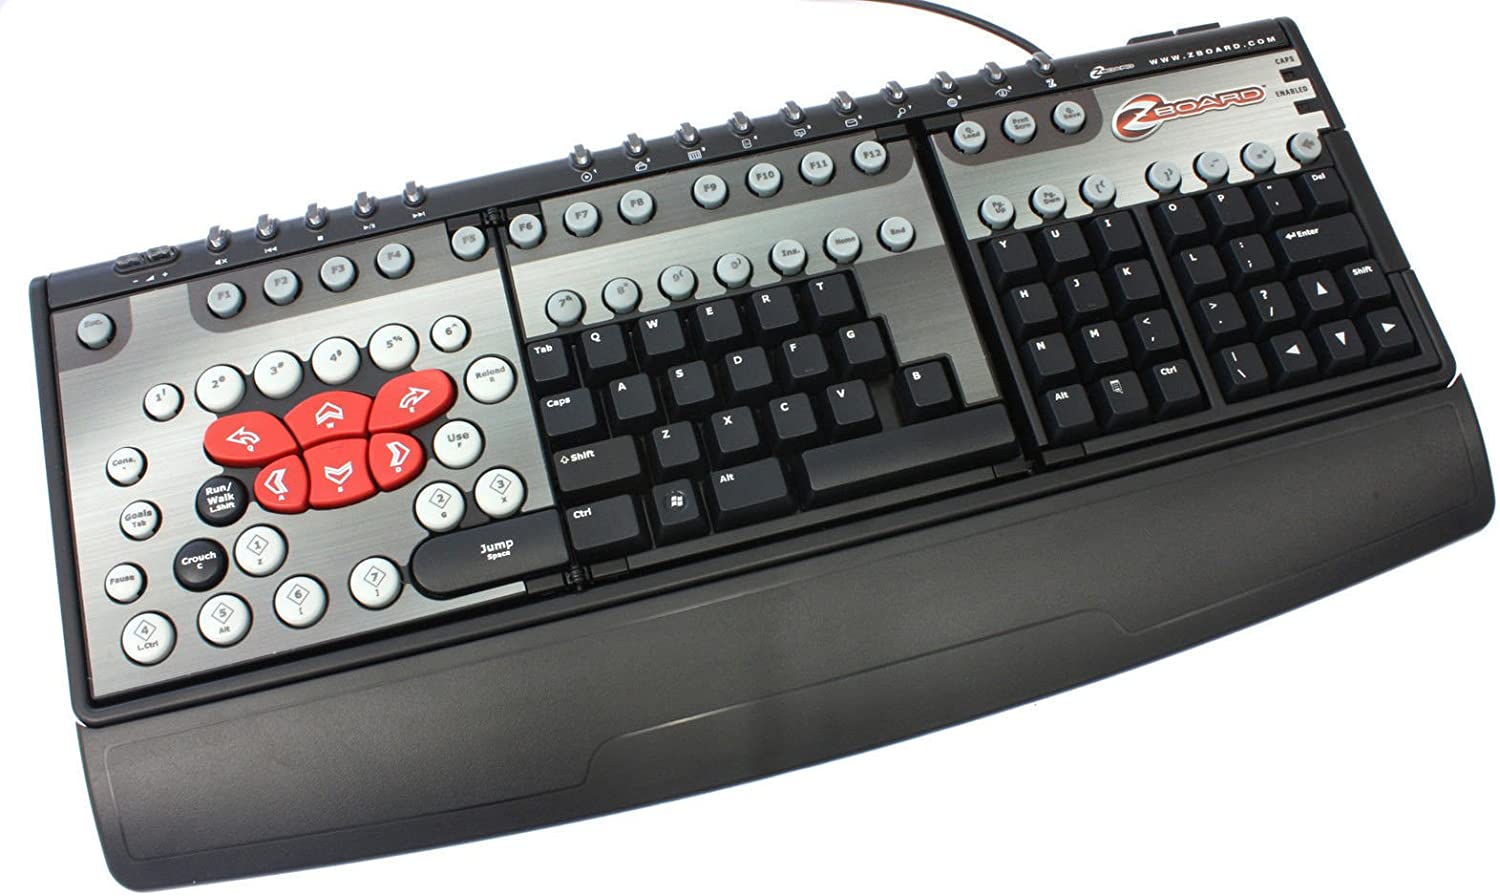 SteelSeries Zboard Gaming Keyboard ZBD101 User Manual